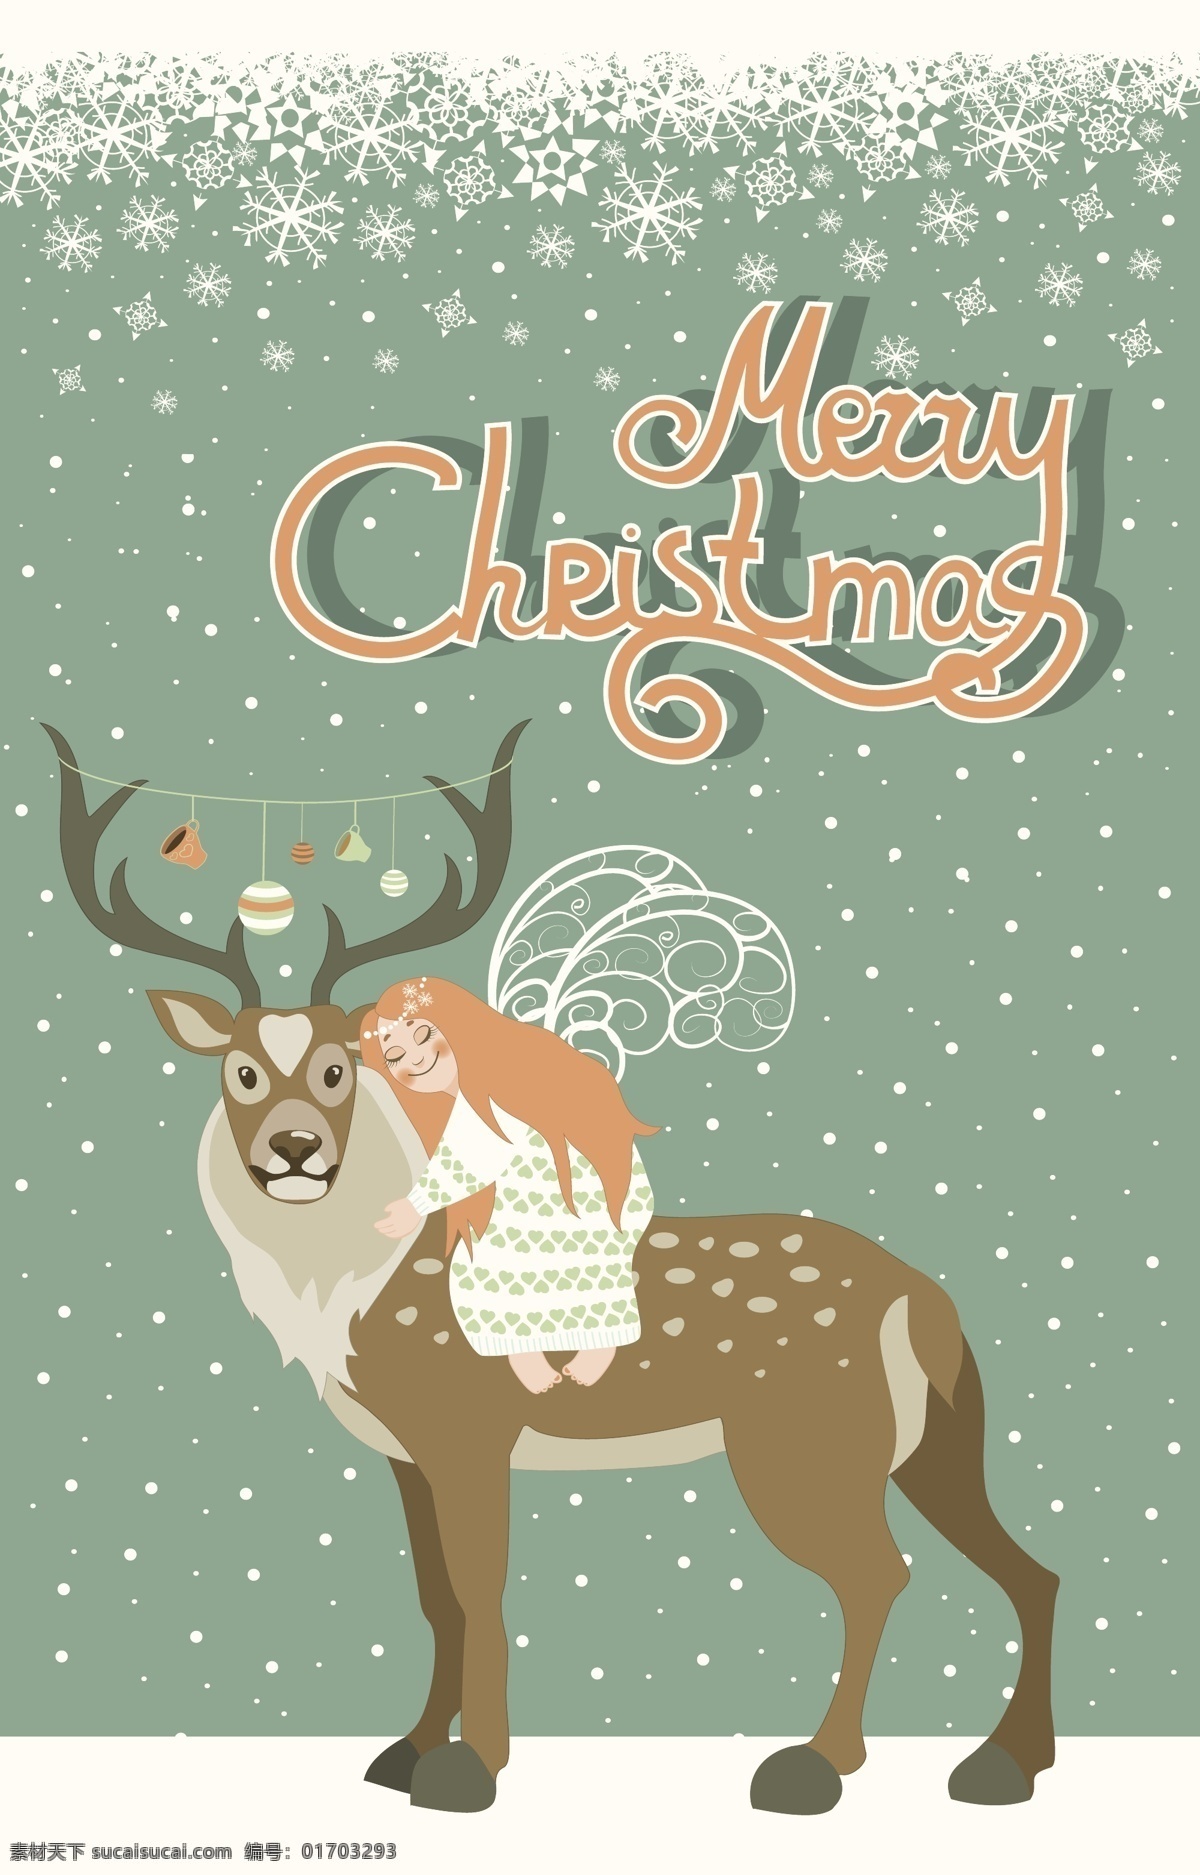 可爱 天使 拥抱 驯鹿 冬季 动物 节日 卡通天使 可爱的天使 圣诞节 矢量驯鹿 下雪 雪景